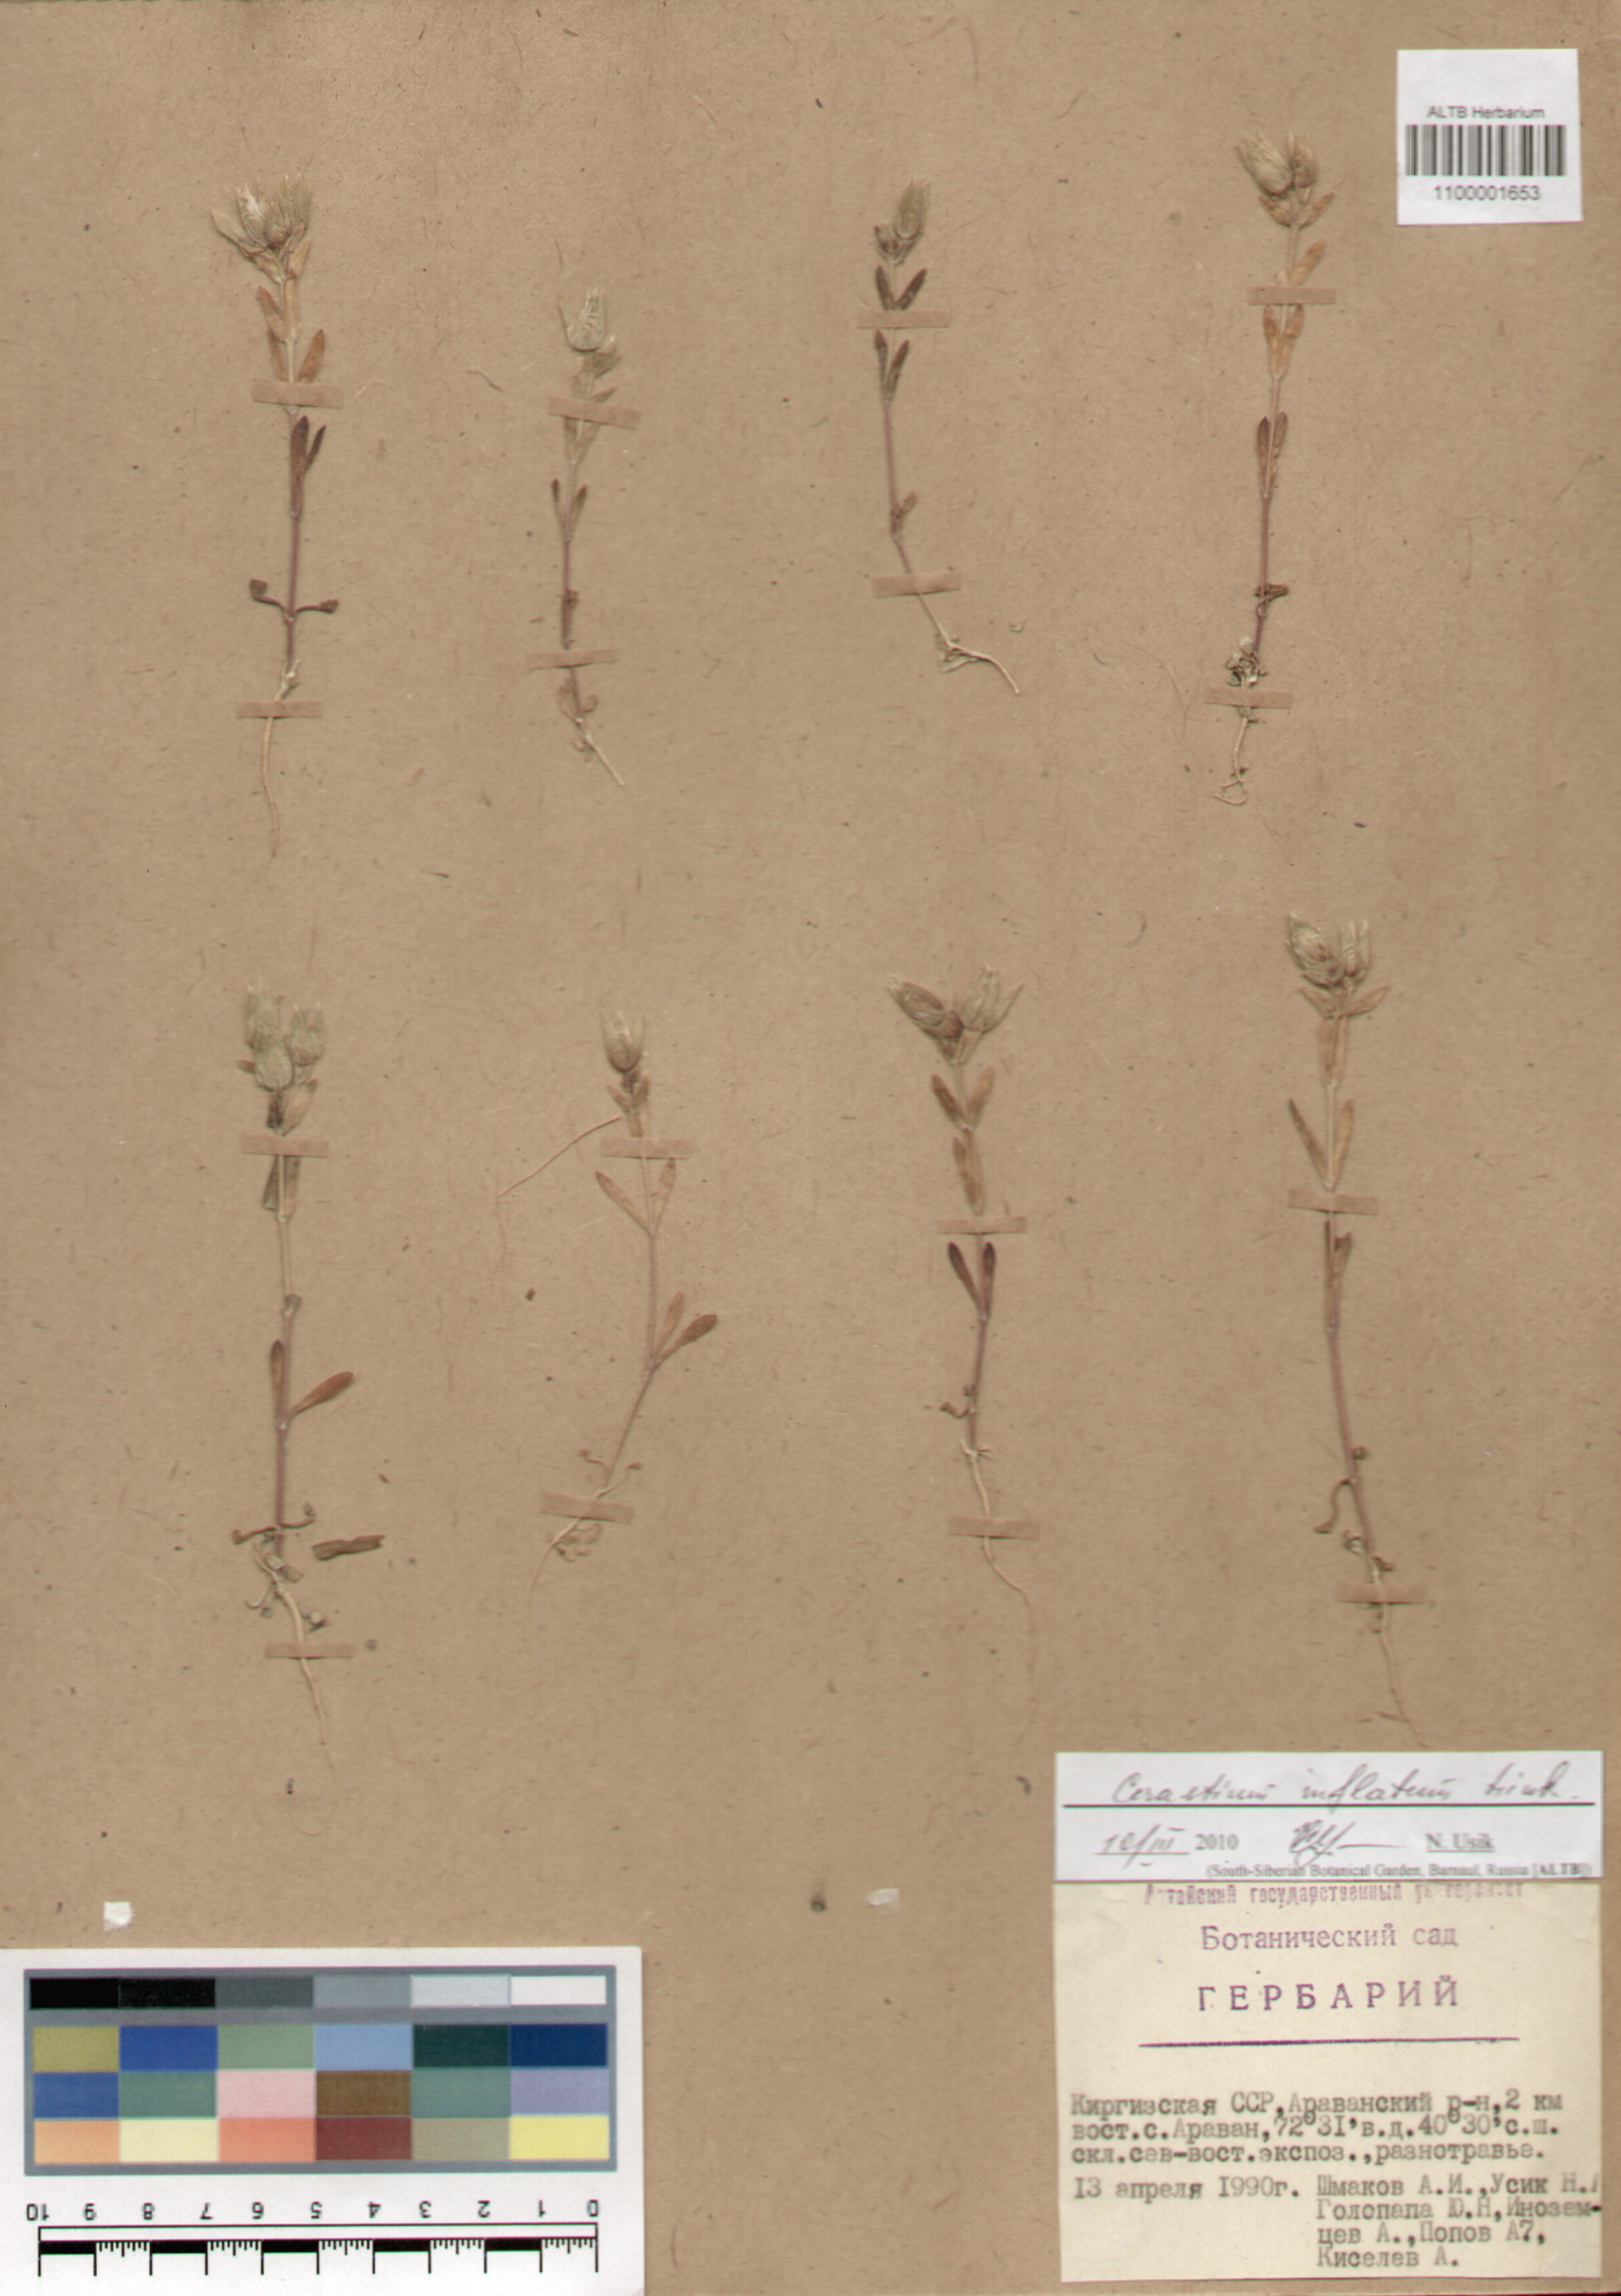 Caryophyllaceae,Cerastium inflatum Link.